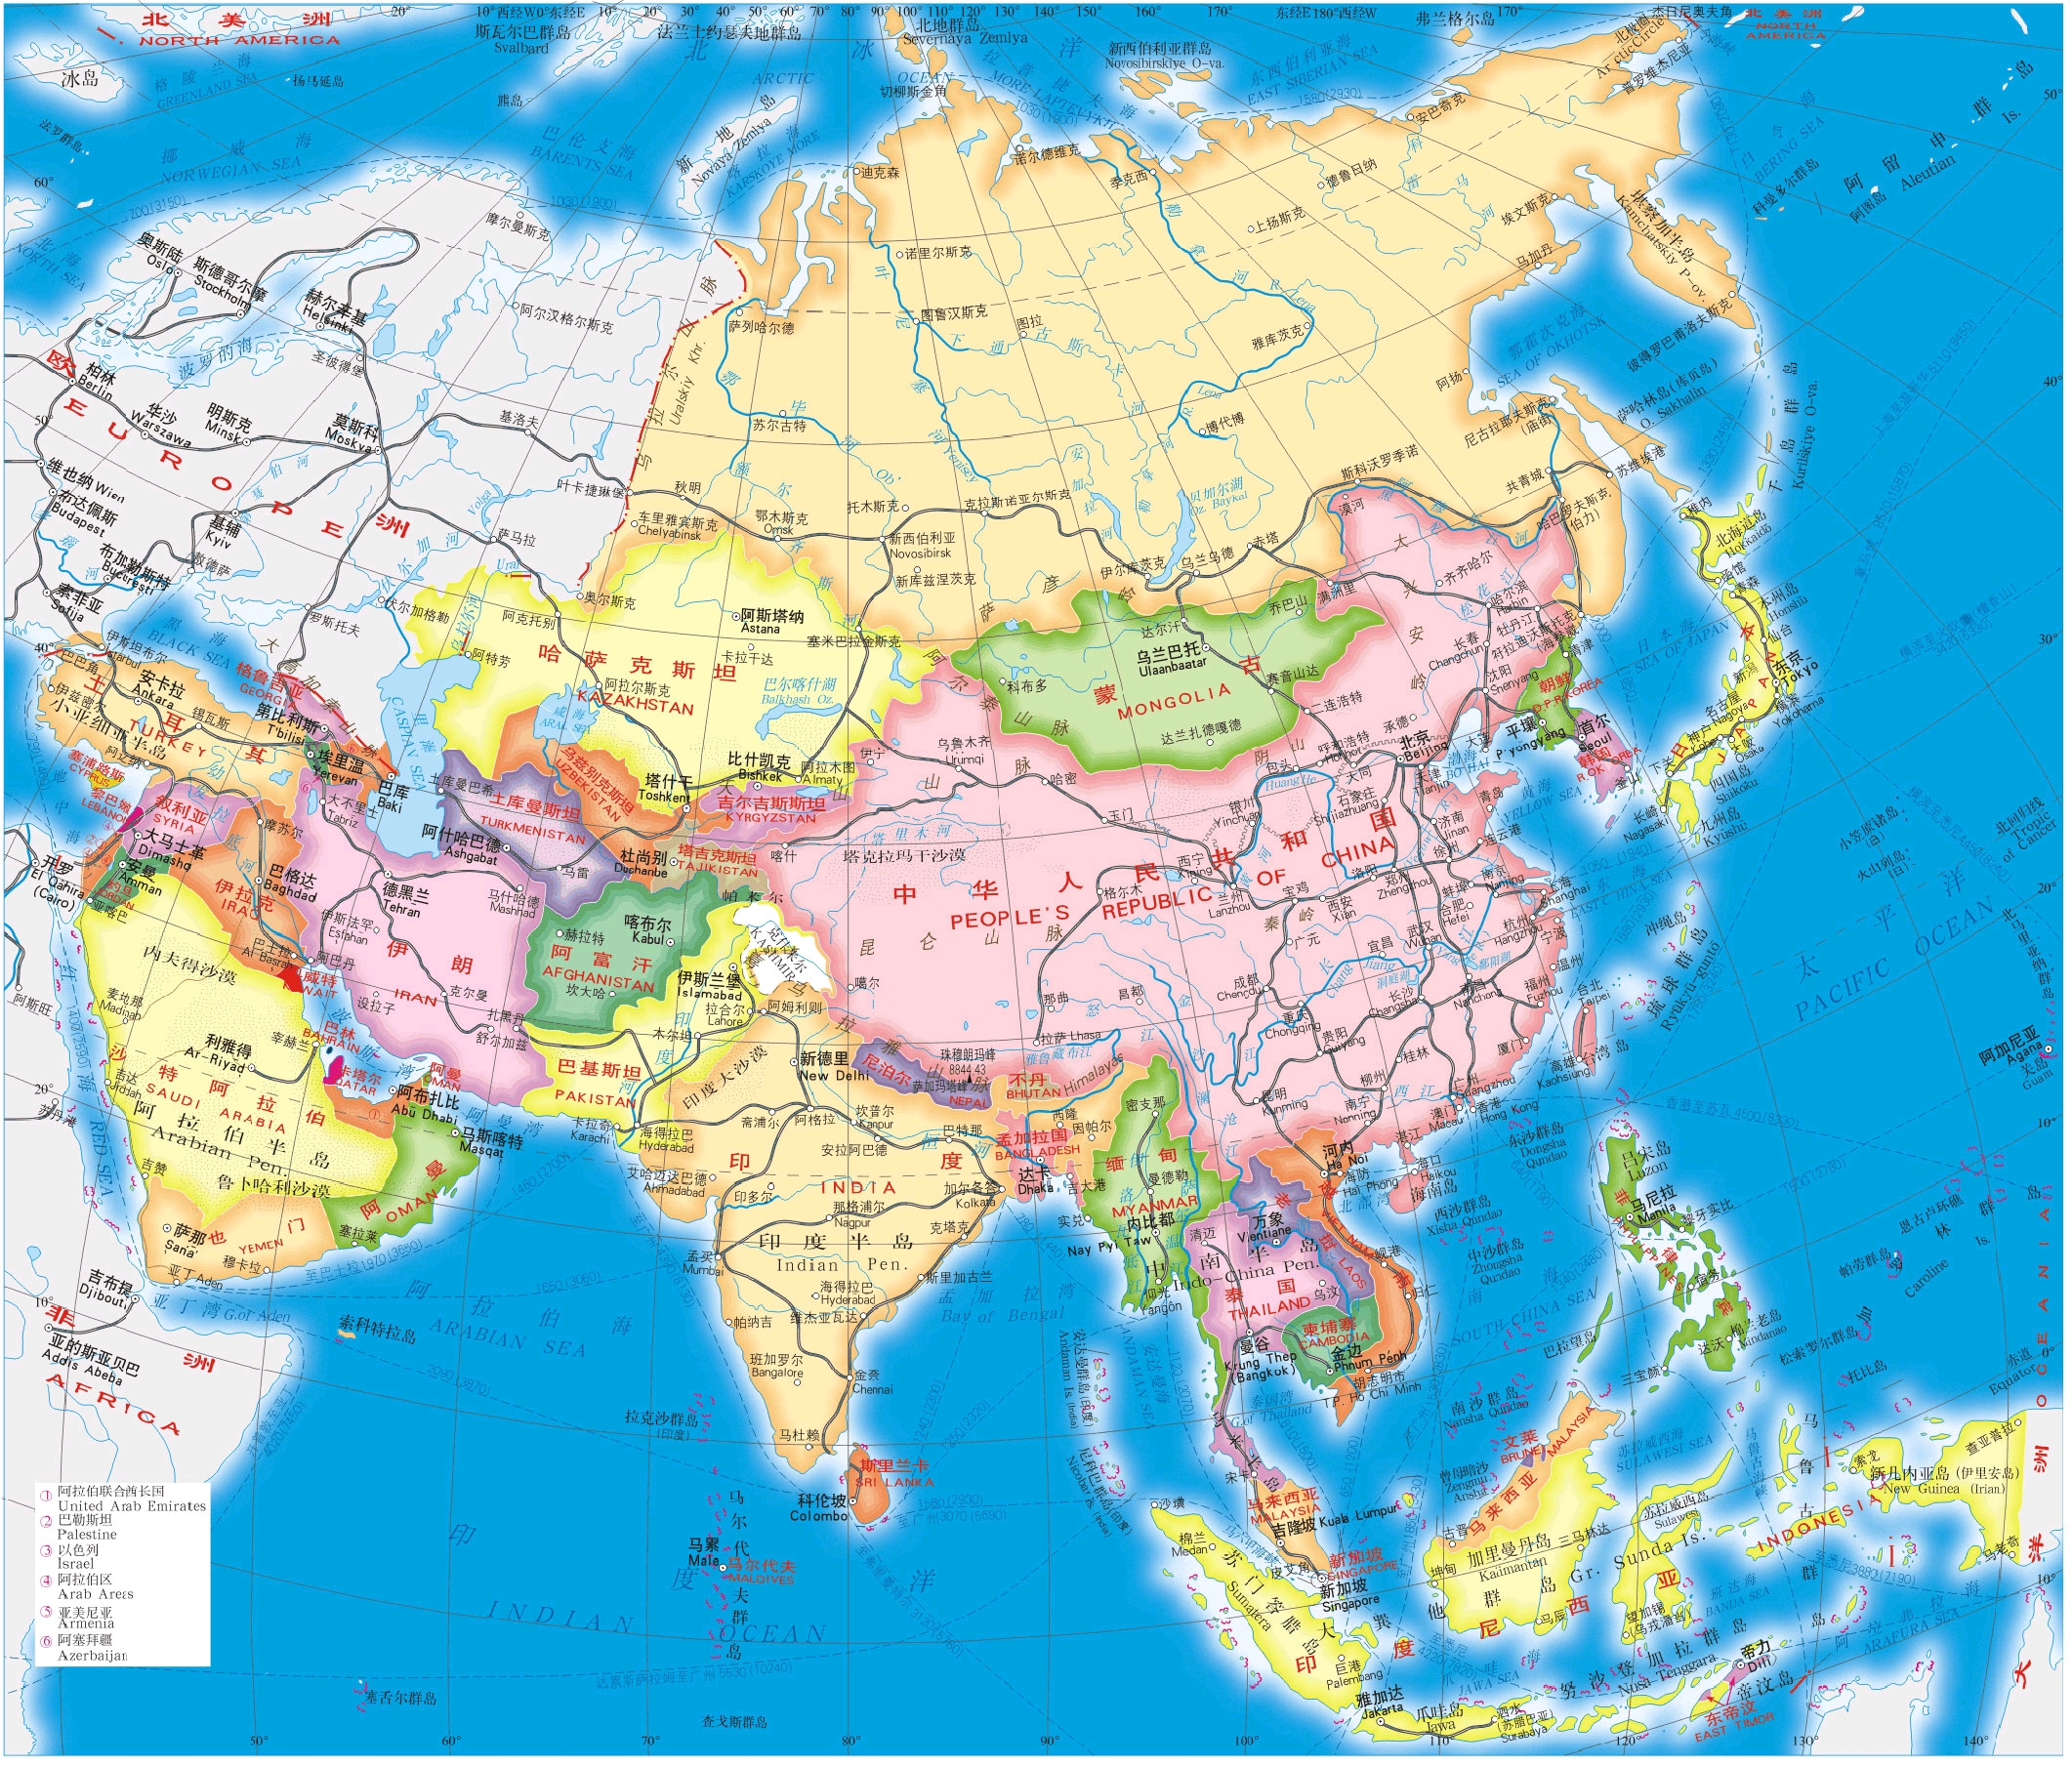 科技 学习 行政疆域图看了一个月的亚洲地图后,今天终于实施行动了